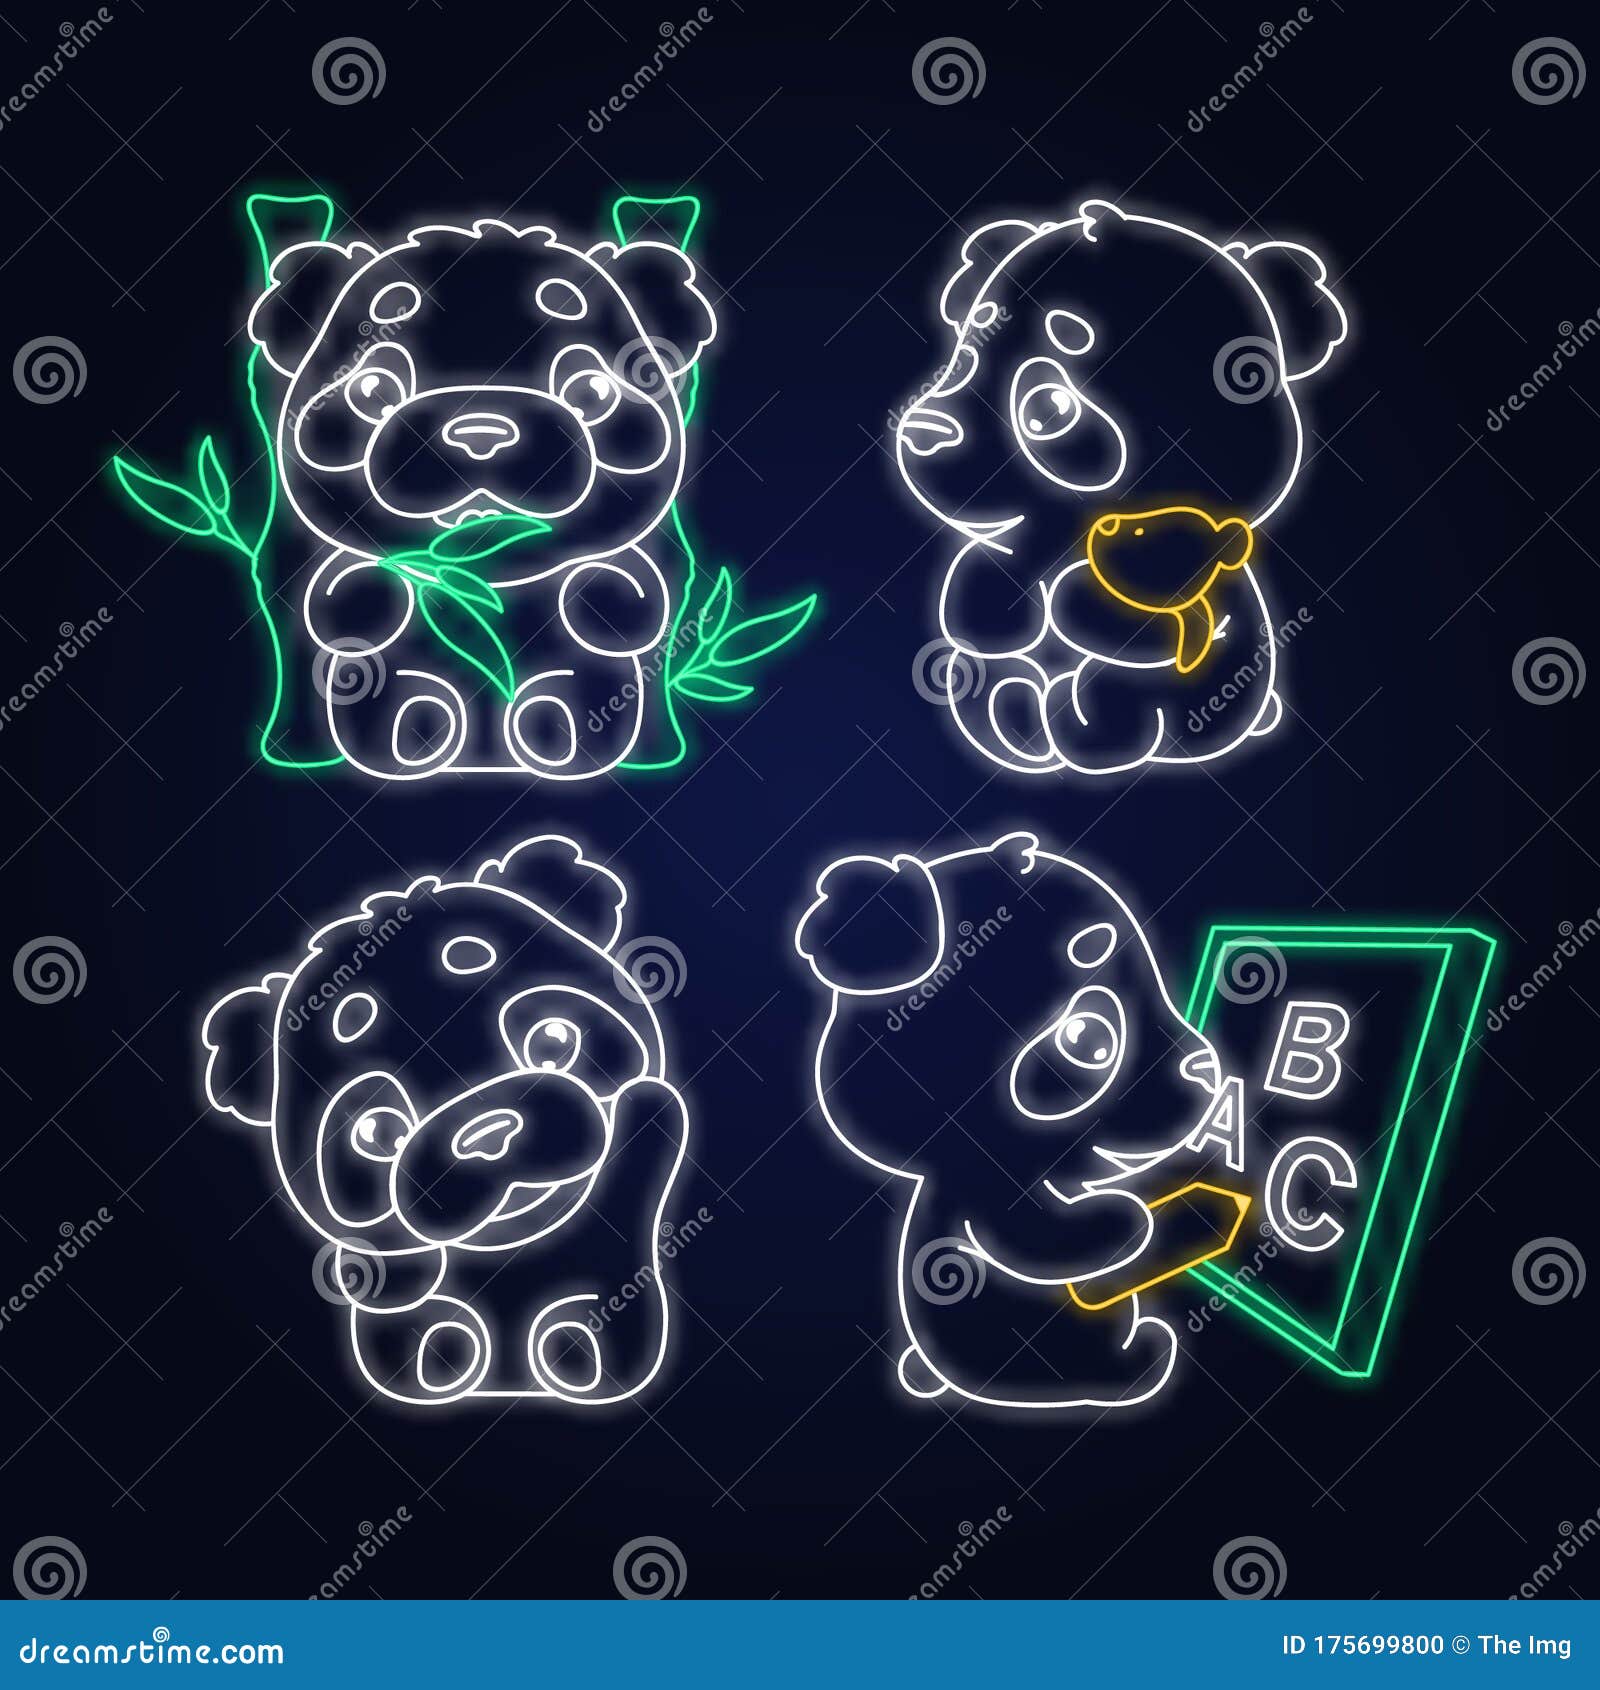 panda bonito comendo personagem de desenho animado de bambu kawaii. animal  adorável, feliz e engraçado desfrutar